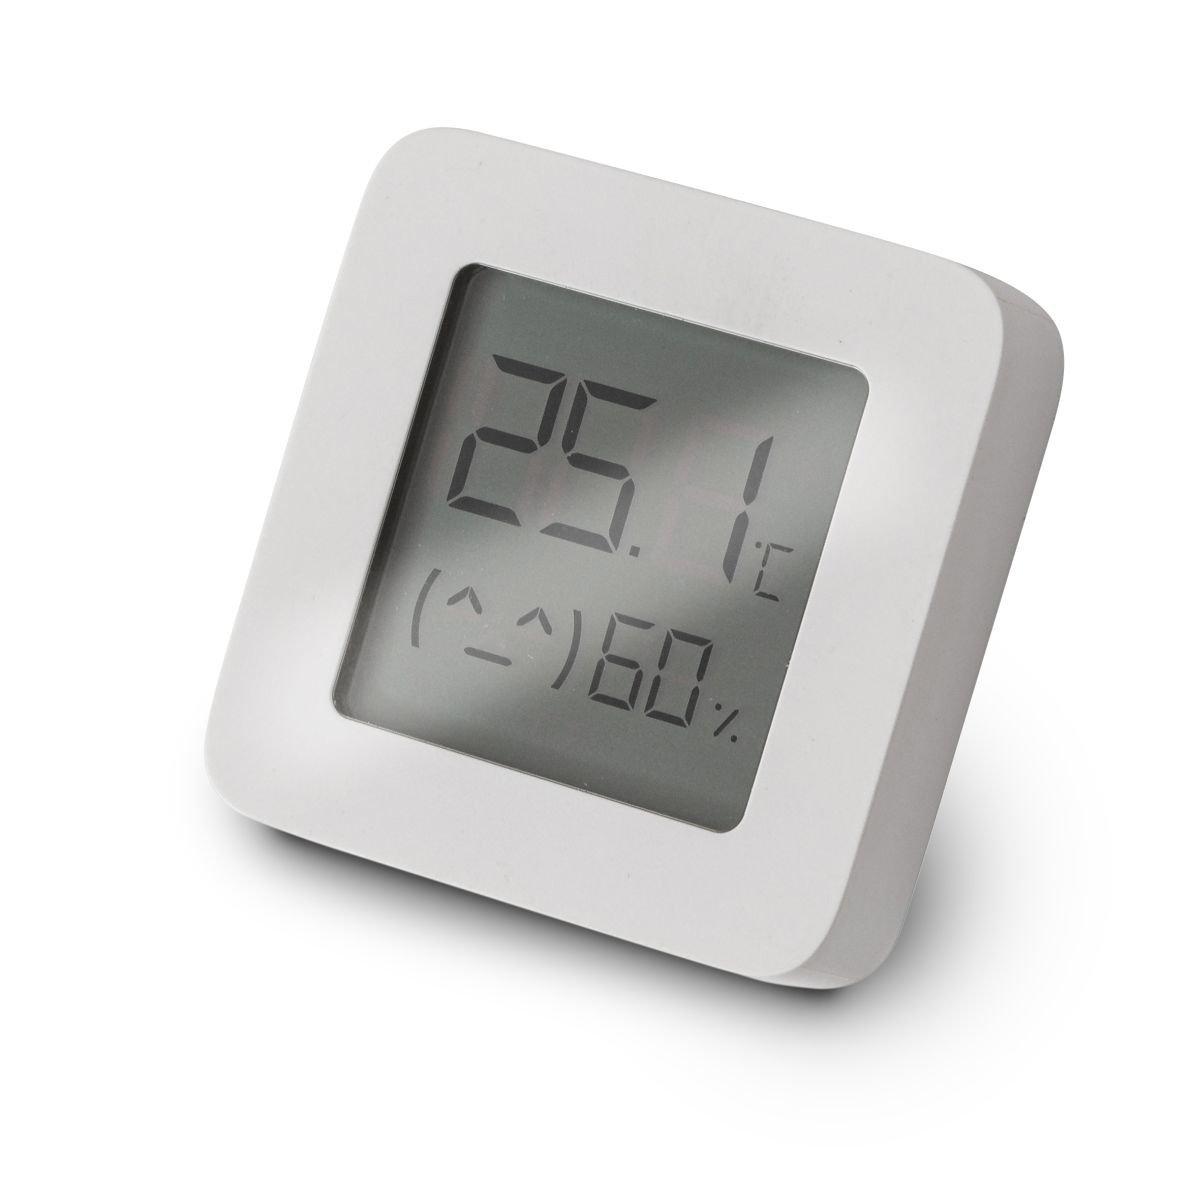 Elbro Elbro BTH1 sensore di temperatura e umidità Interno Temperature & humidity sensor Libera installazione  